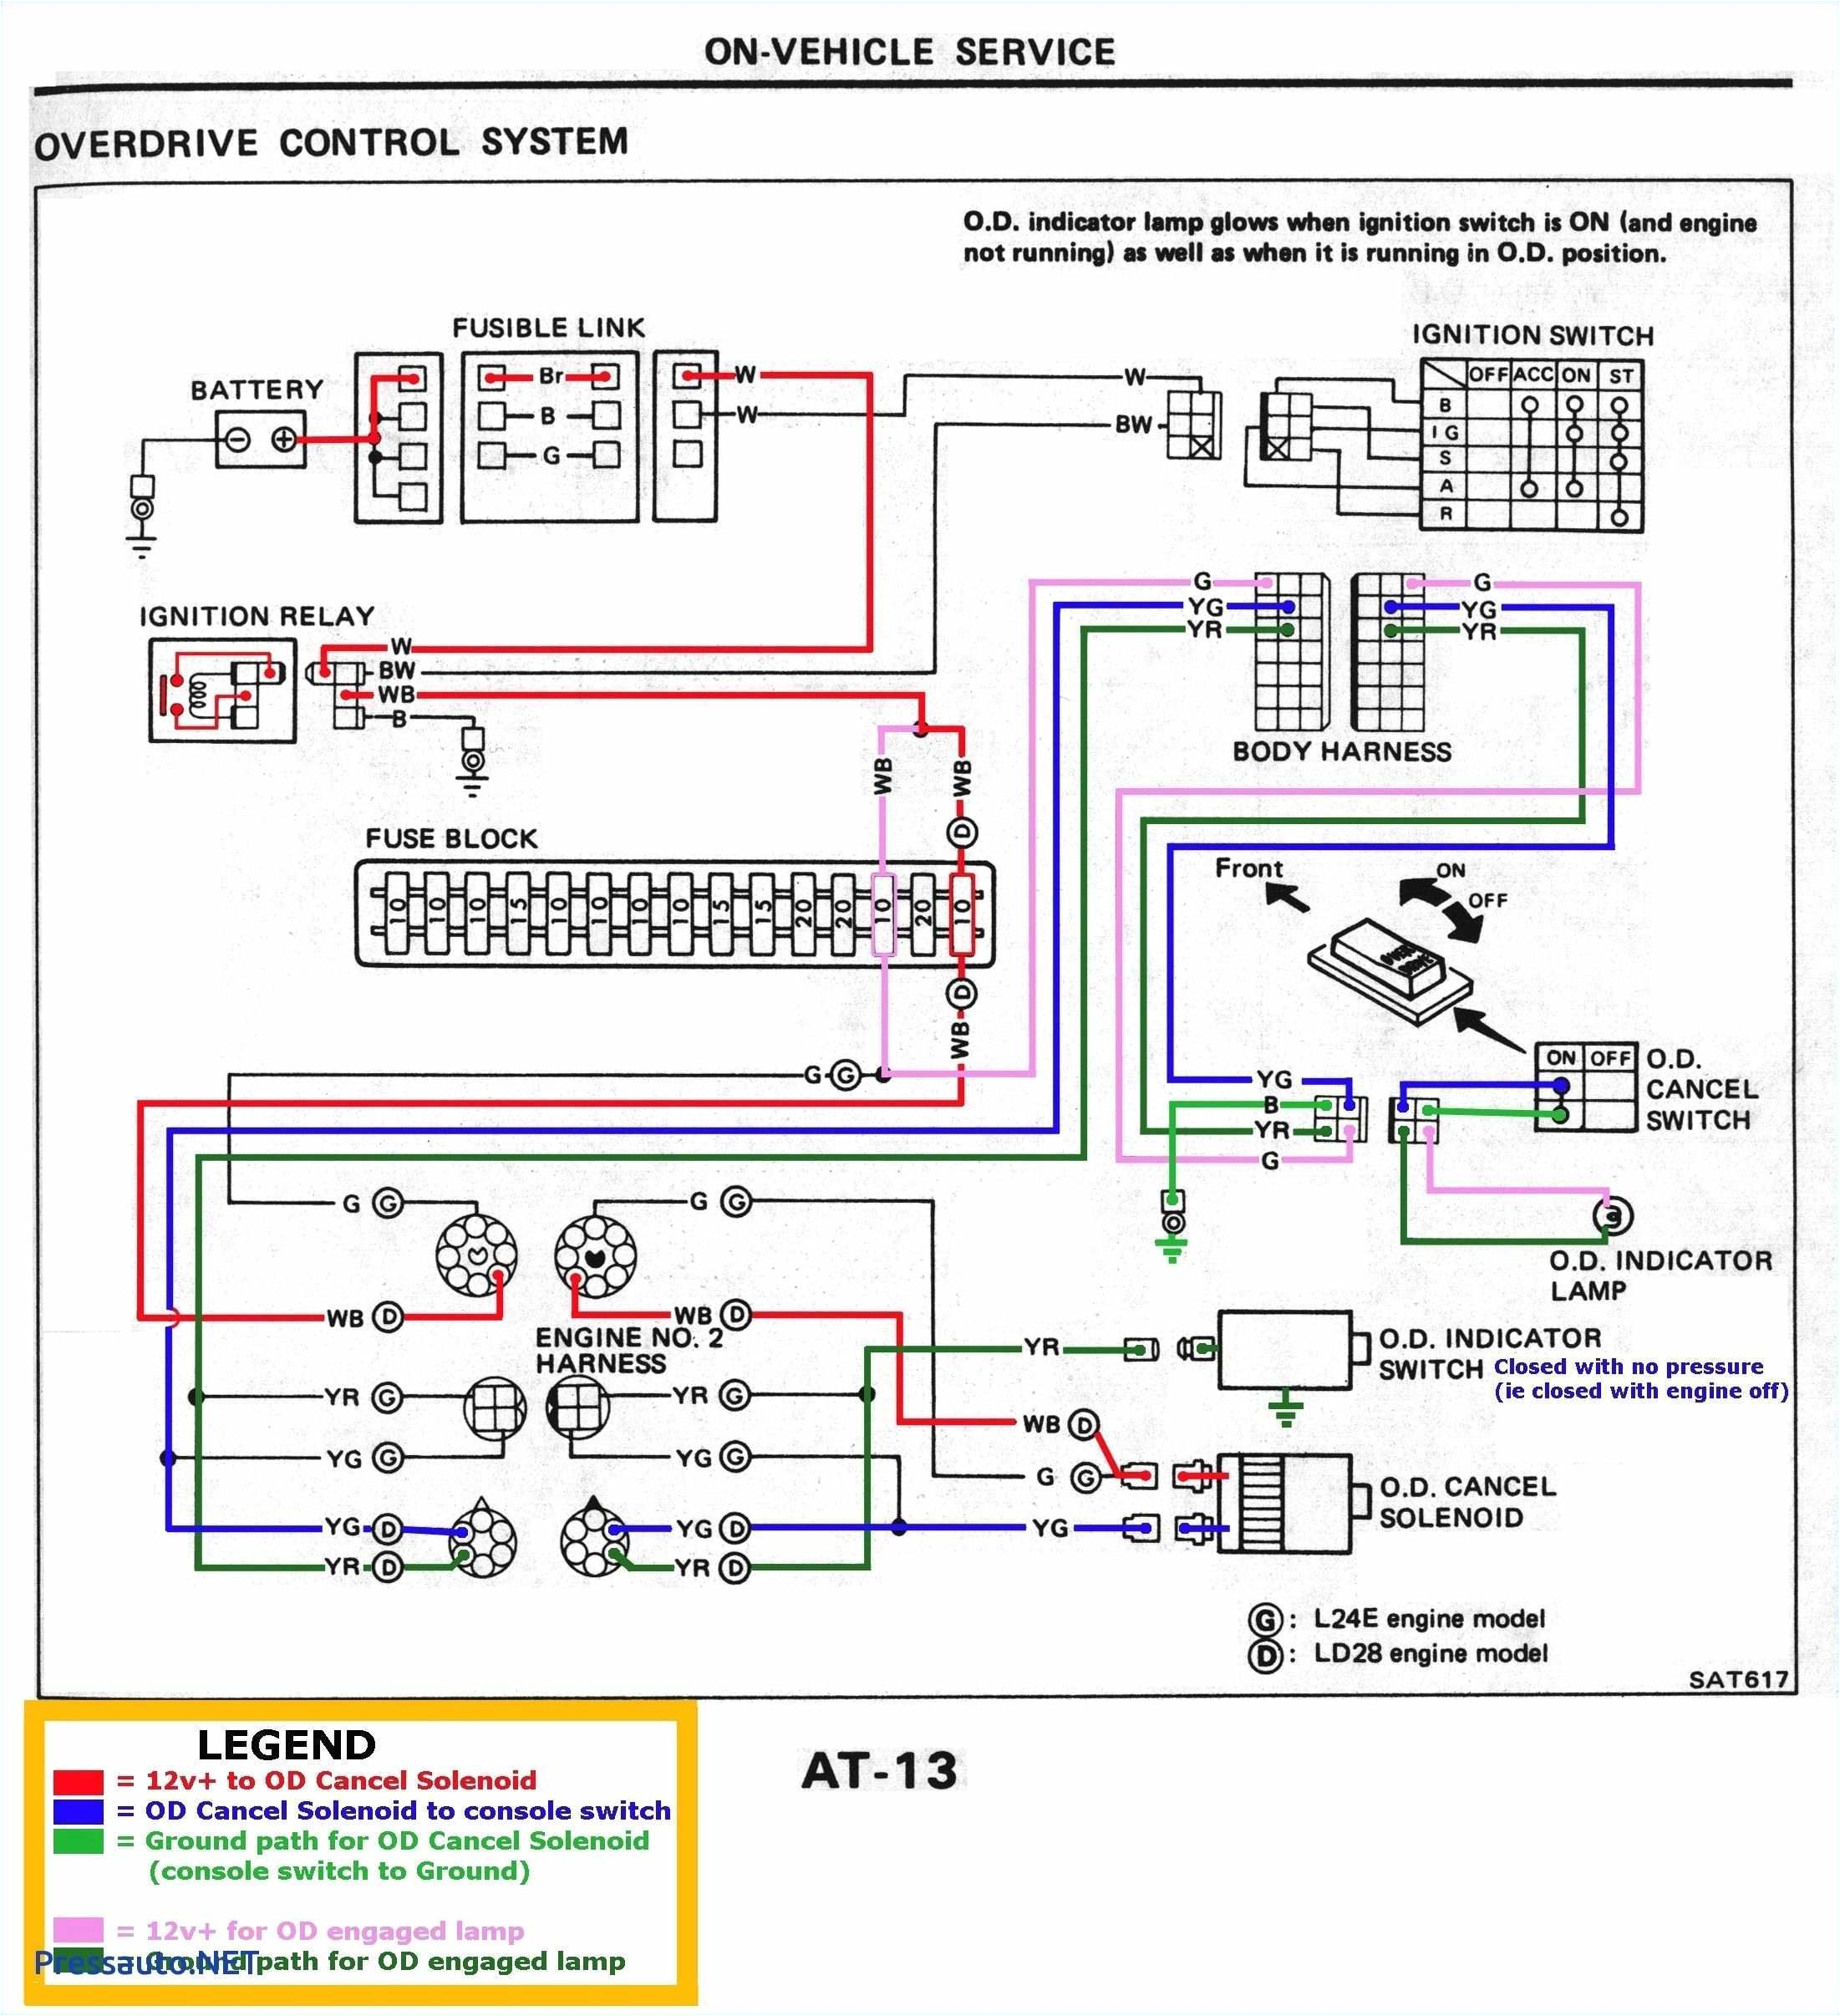 kenwood car stereo wiring diagram inspirational vr3 car stereo wiring harness of kenwood car stereo wiring diagram jpg